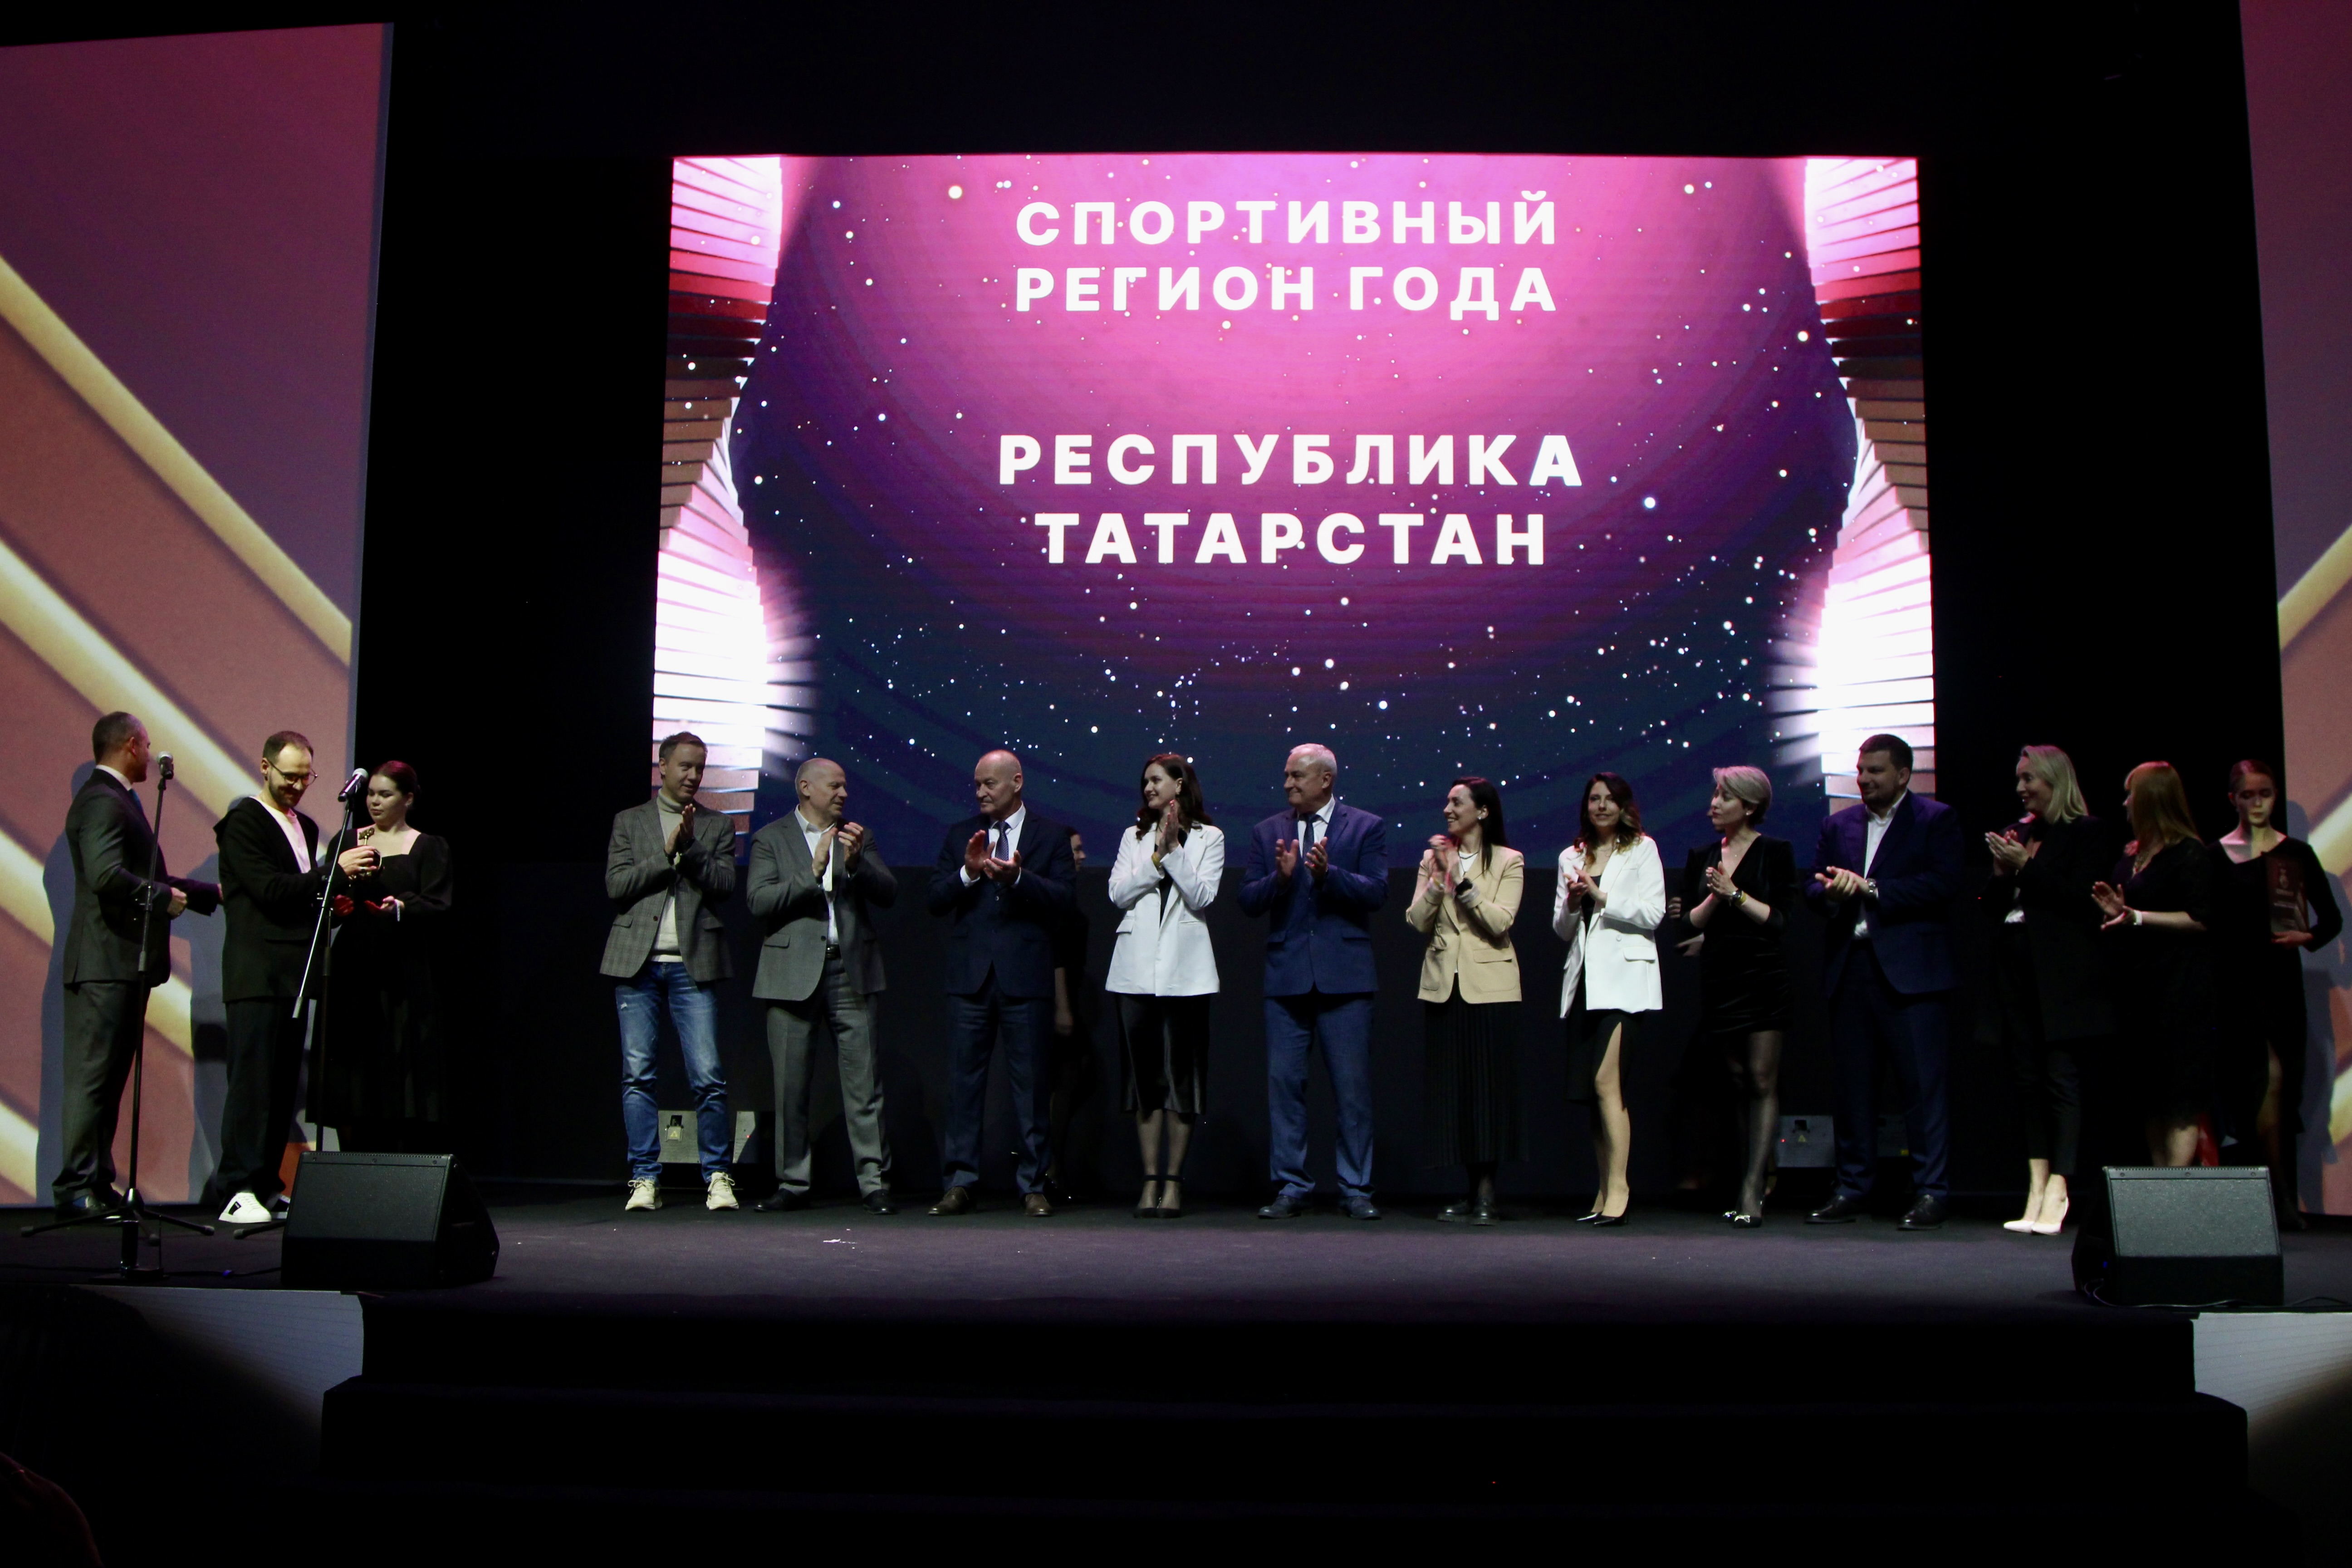 Республика Татарстан – «Спортивный регион года» на VII Премии СБК